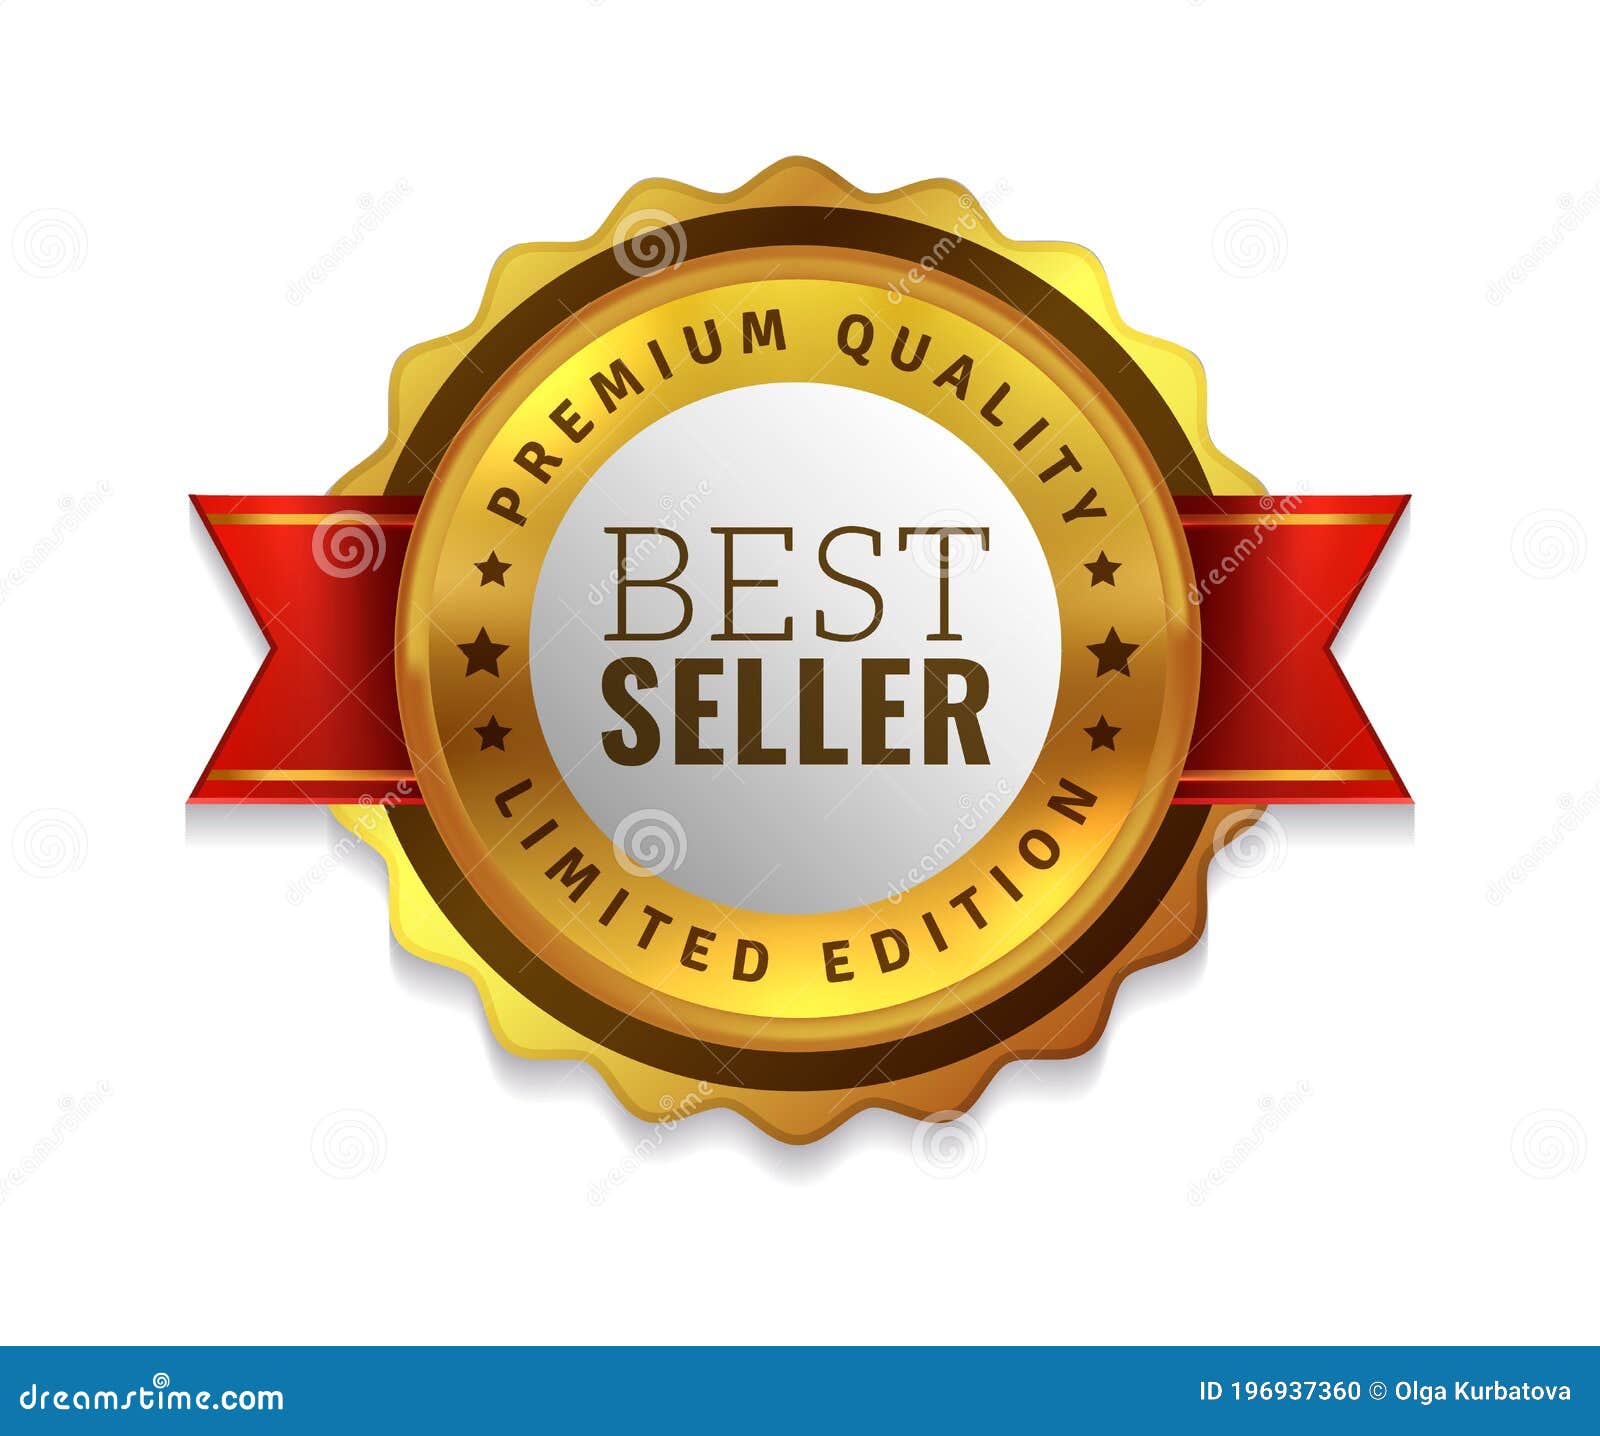 Best seller badge icon, Best seller award logo isolated, vector  Illustration Stock Vector, best seller